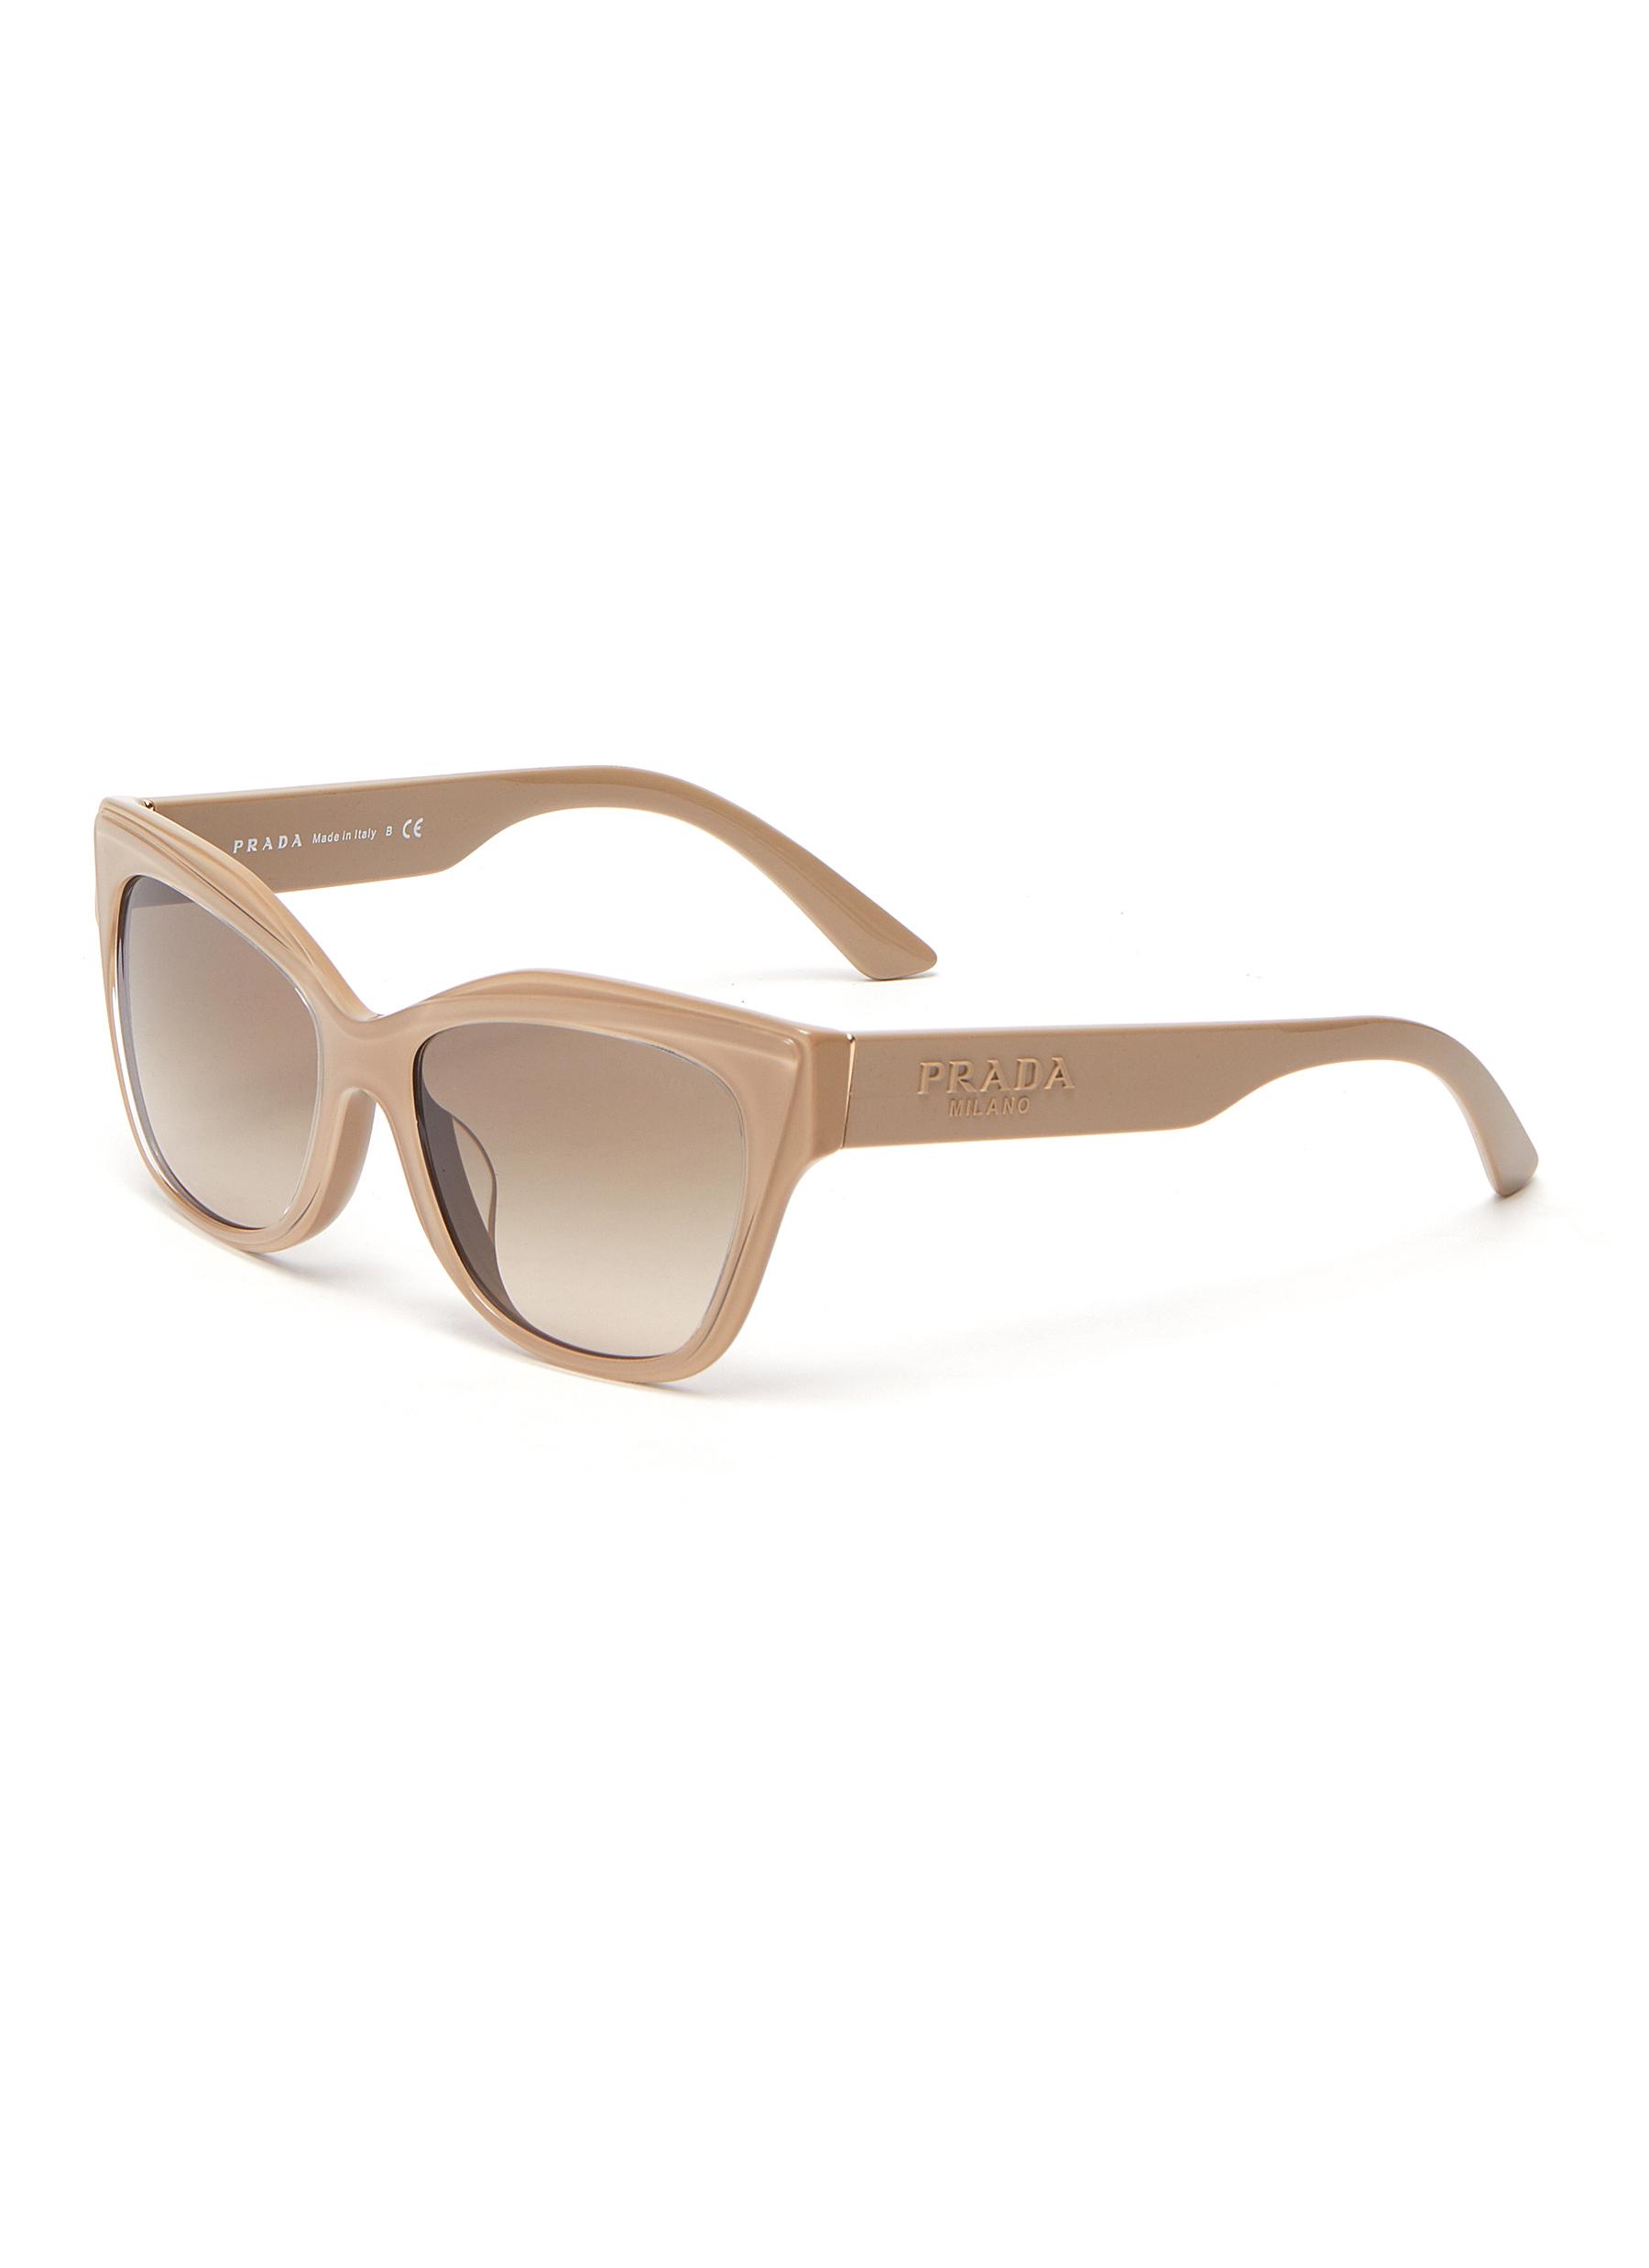 prada thick frame sunglasses